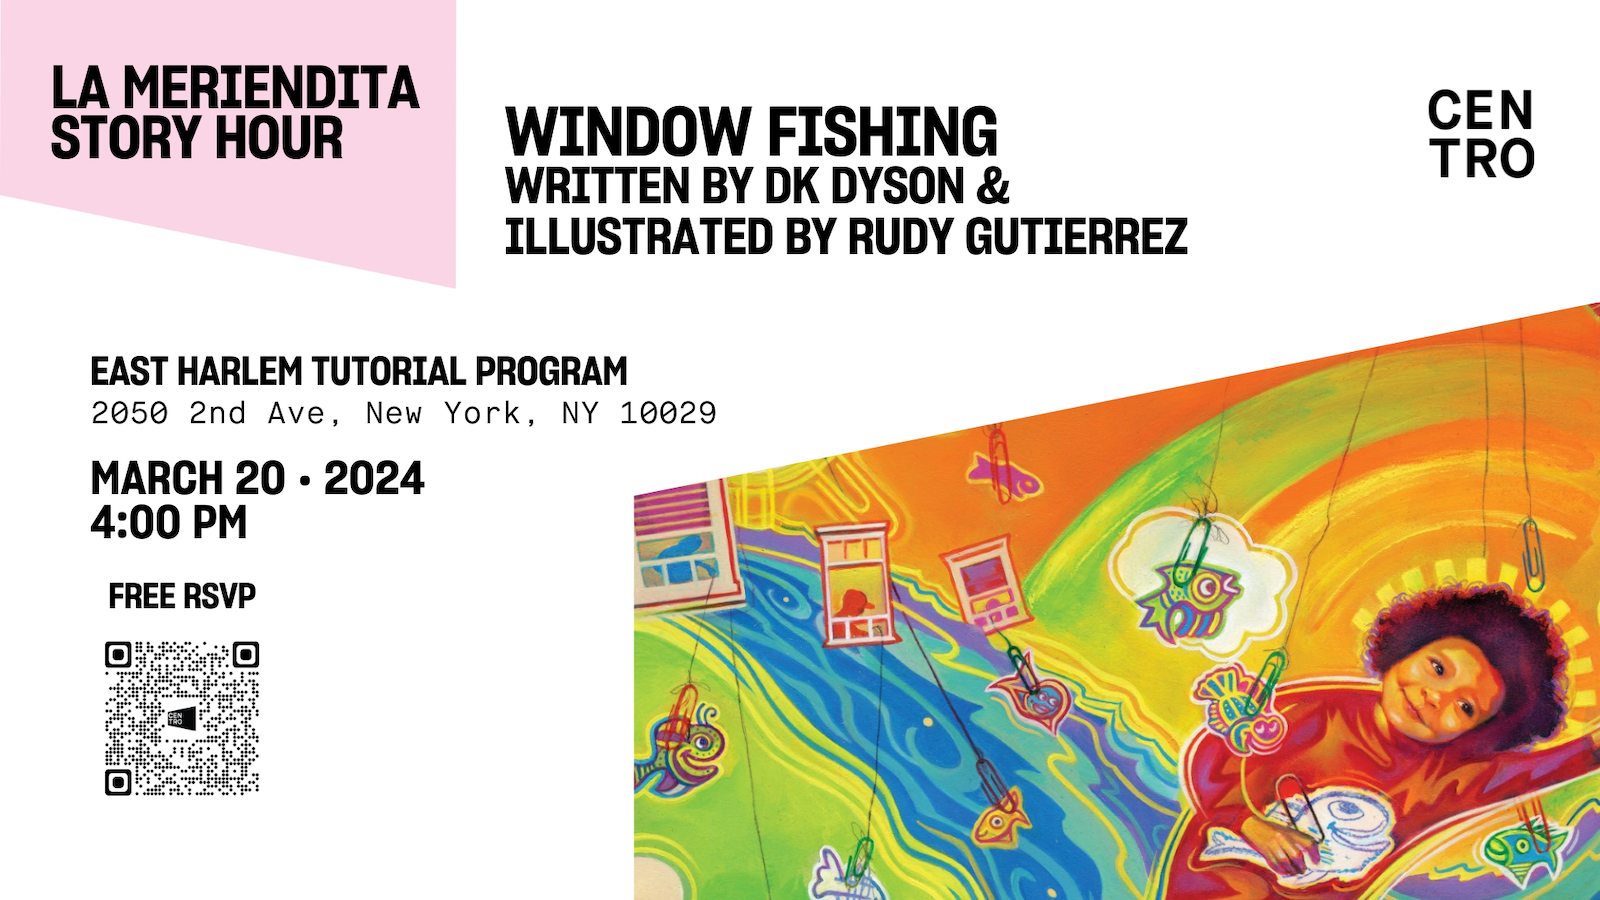 LA MERIENDITA STORY HOUR: WINDOW FISHING BY DK DYSON